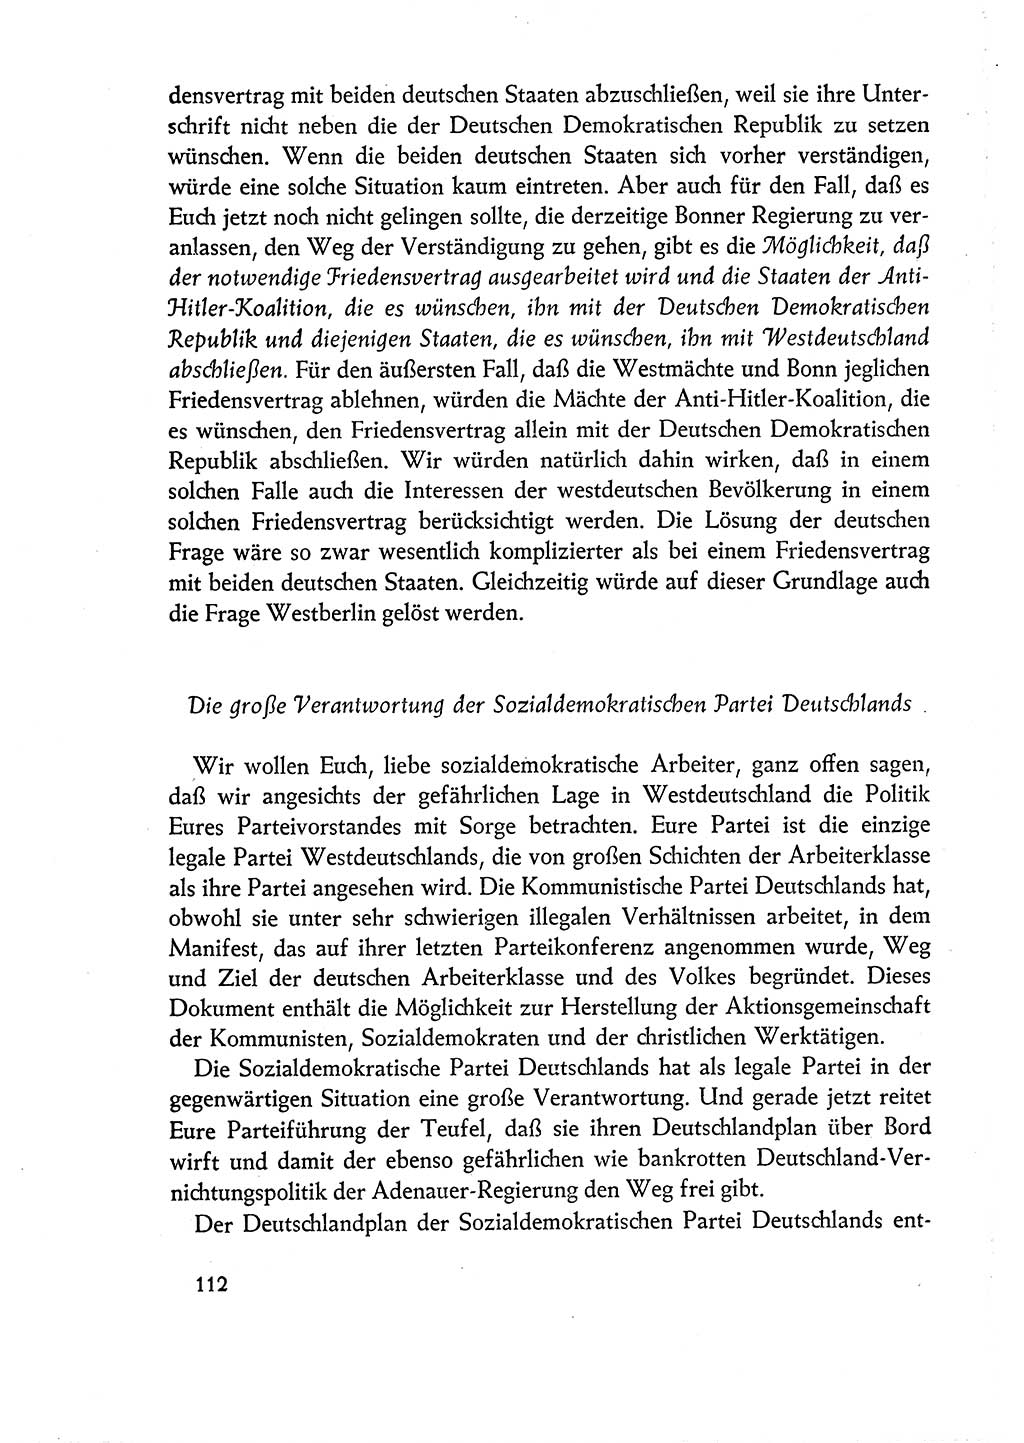 Dokumente der Sozialistischen Einheitspartei Deutschlands (SED) [Deutsche Demokratische Republik (DDR)] 1960-1961, Seite 112 (Dok. SED DDR 1960-1961, S. 112)